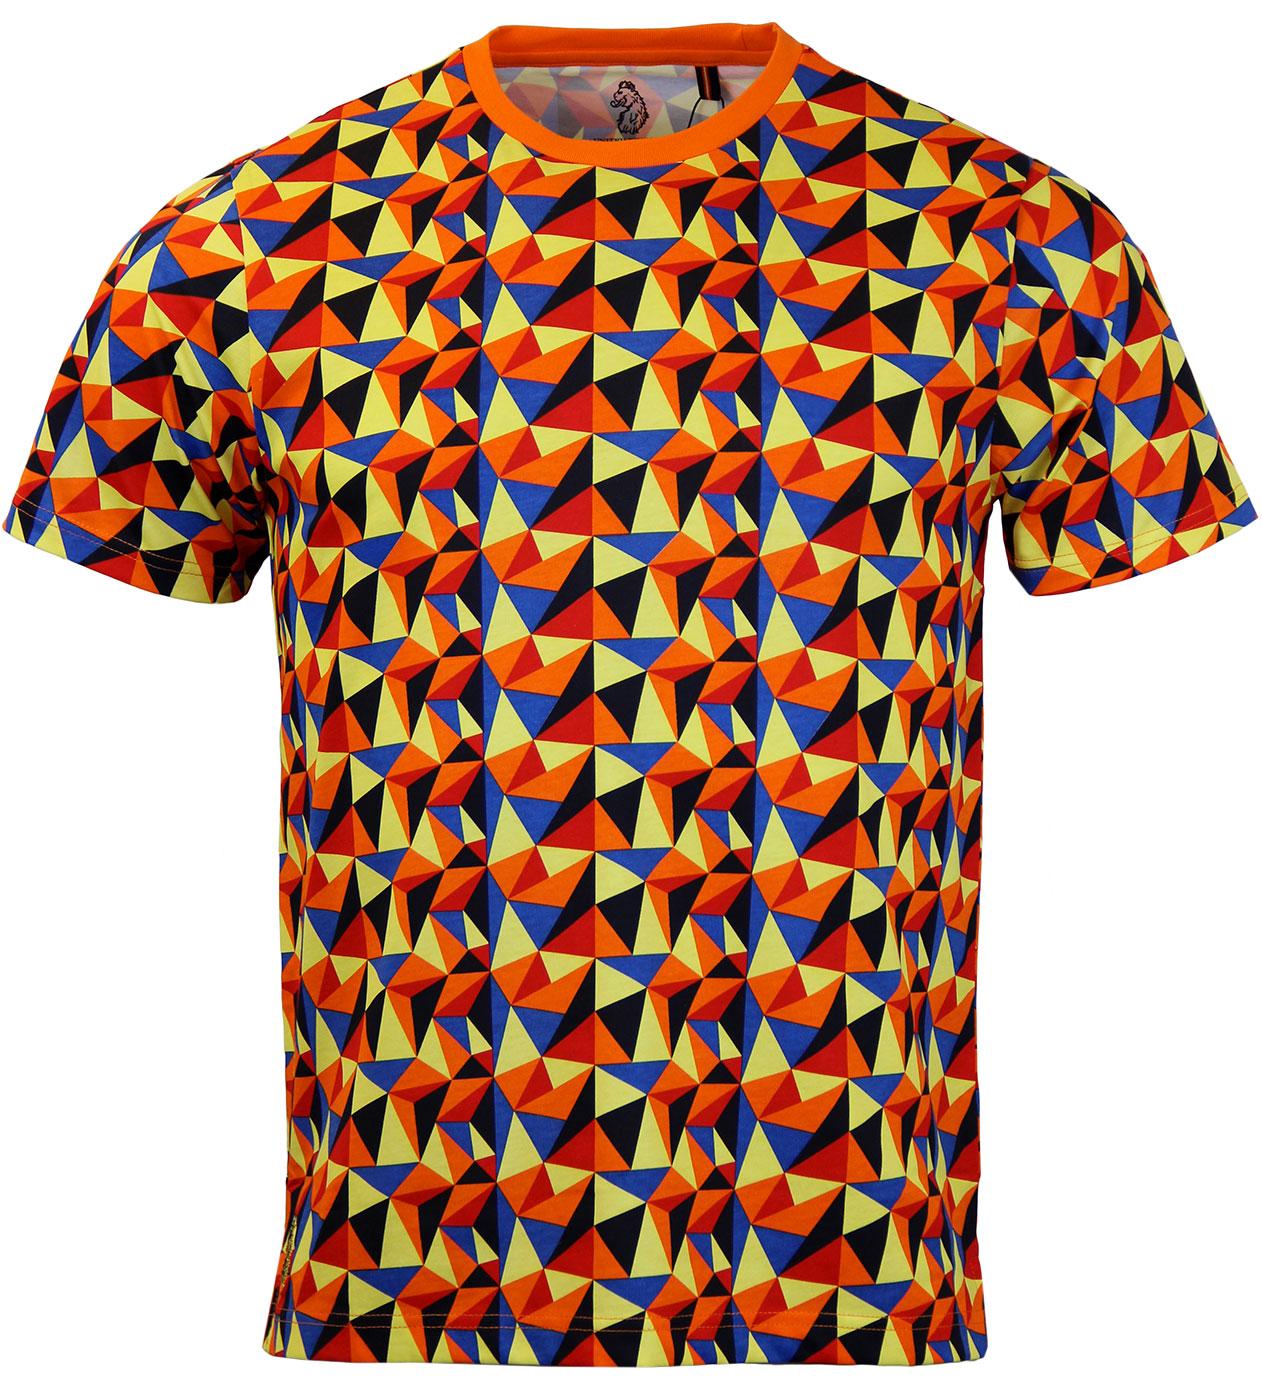 The Jordan LUKE 1977 Retro Geometric Prism T-shirt